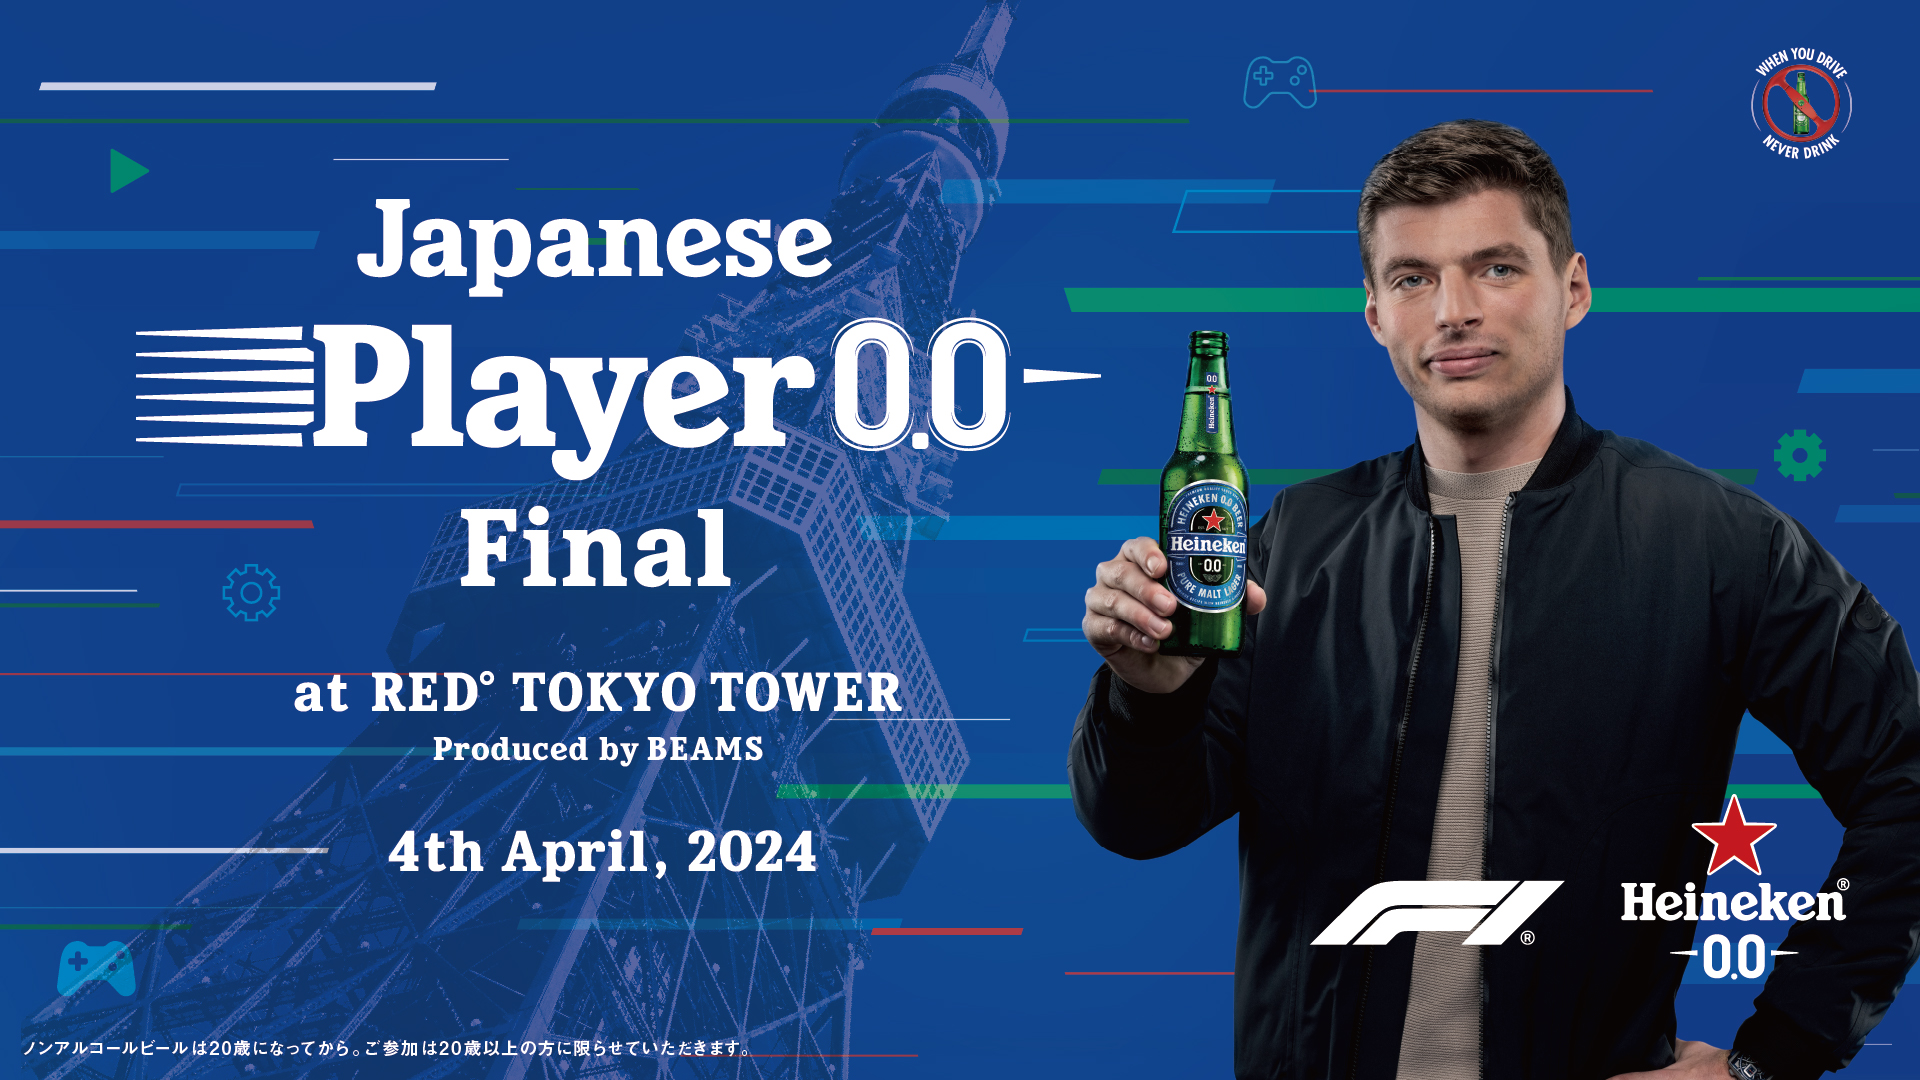 世界No.1のノンアルコールビール*1「Heineken® 0.0」プレゼンツF1®王者と対戦できる世界大会への出場権をかけたesports大会「Japanese Player 0.0 Final」のサブ画像10